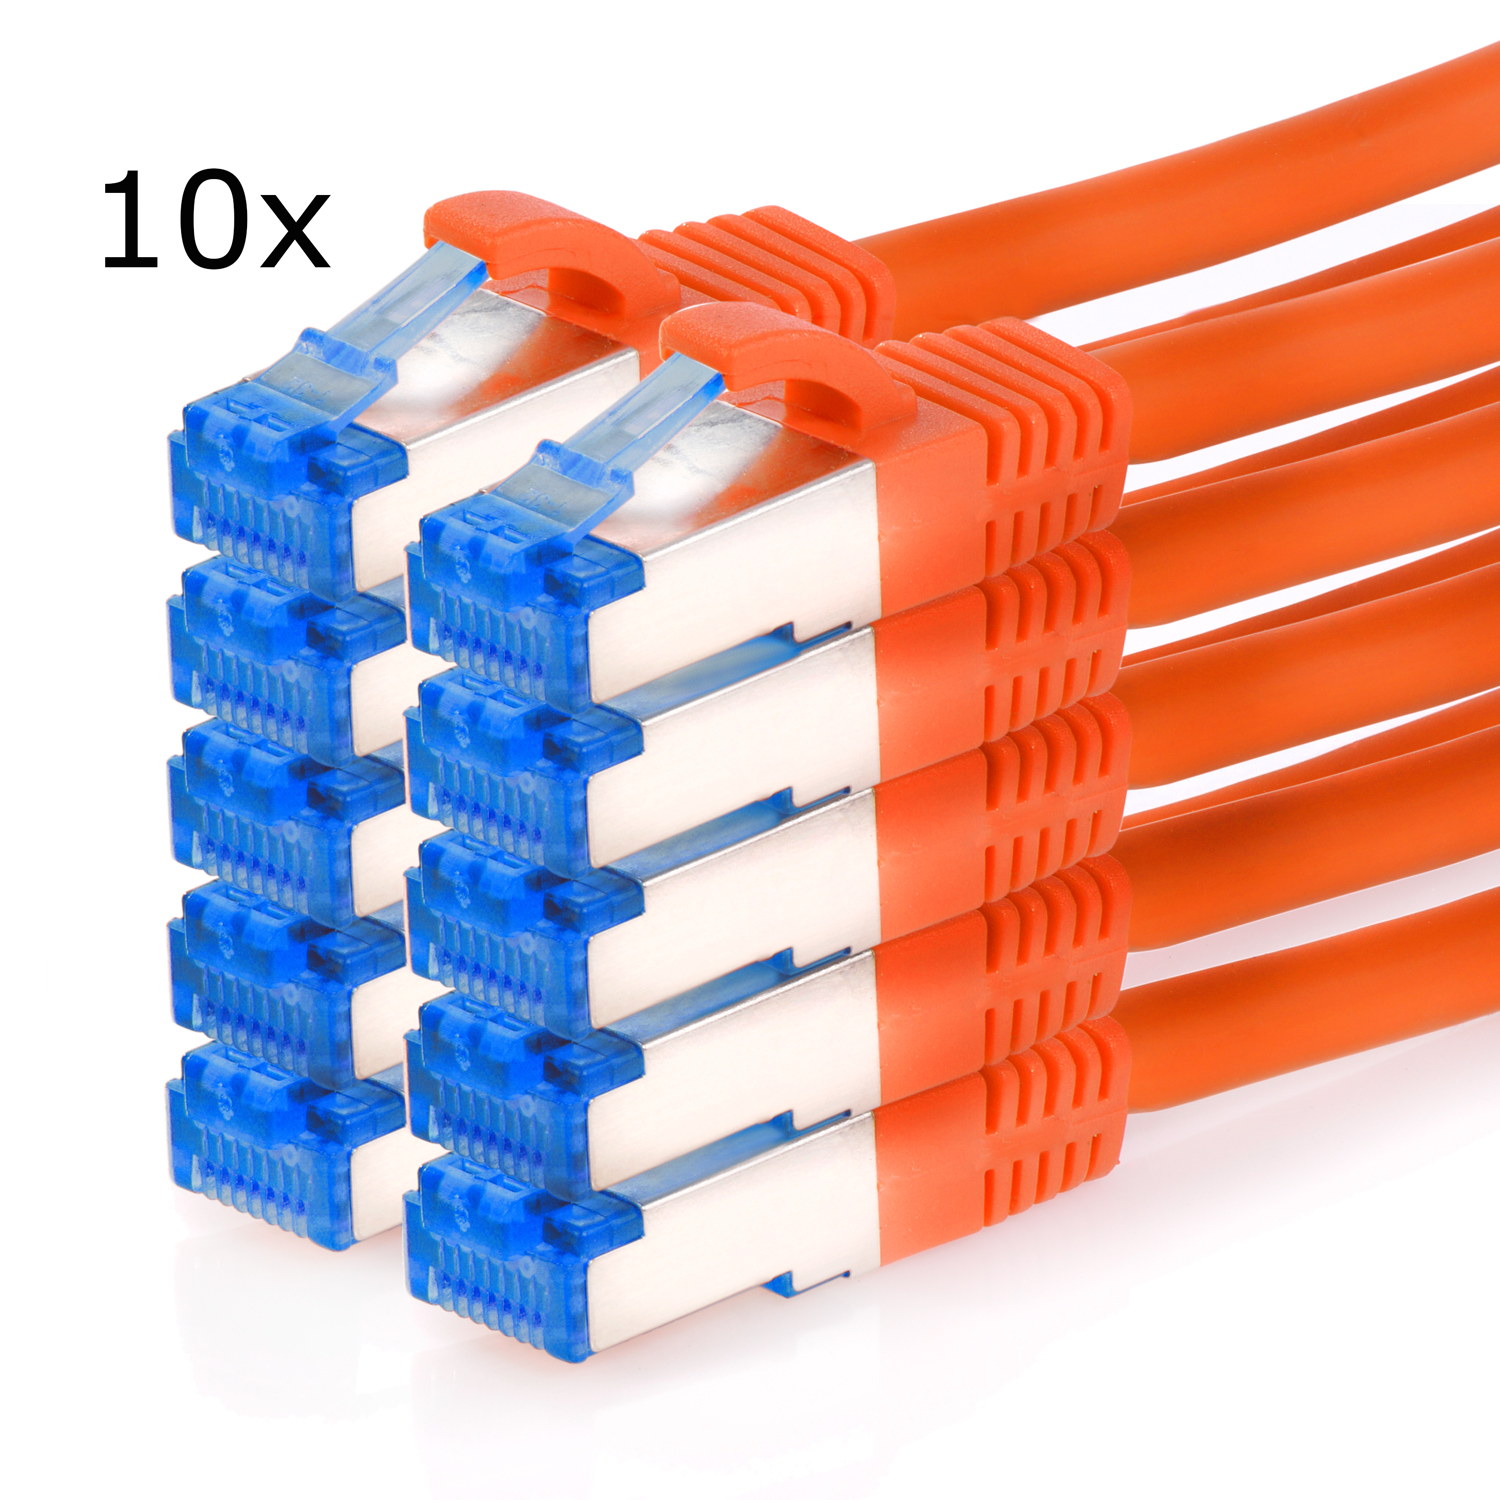 TPFNET 10er / 10GBit, 1 Patchkabel S/FTP 1m m orange, Netzwerkkabel Pack Netzwerkkabel